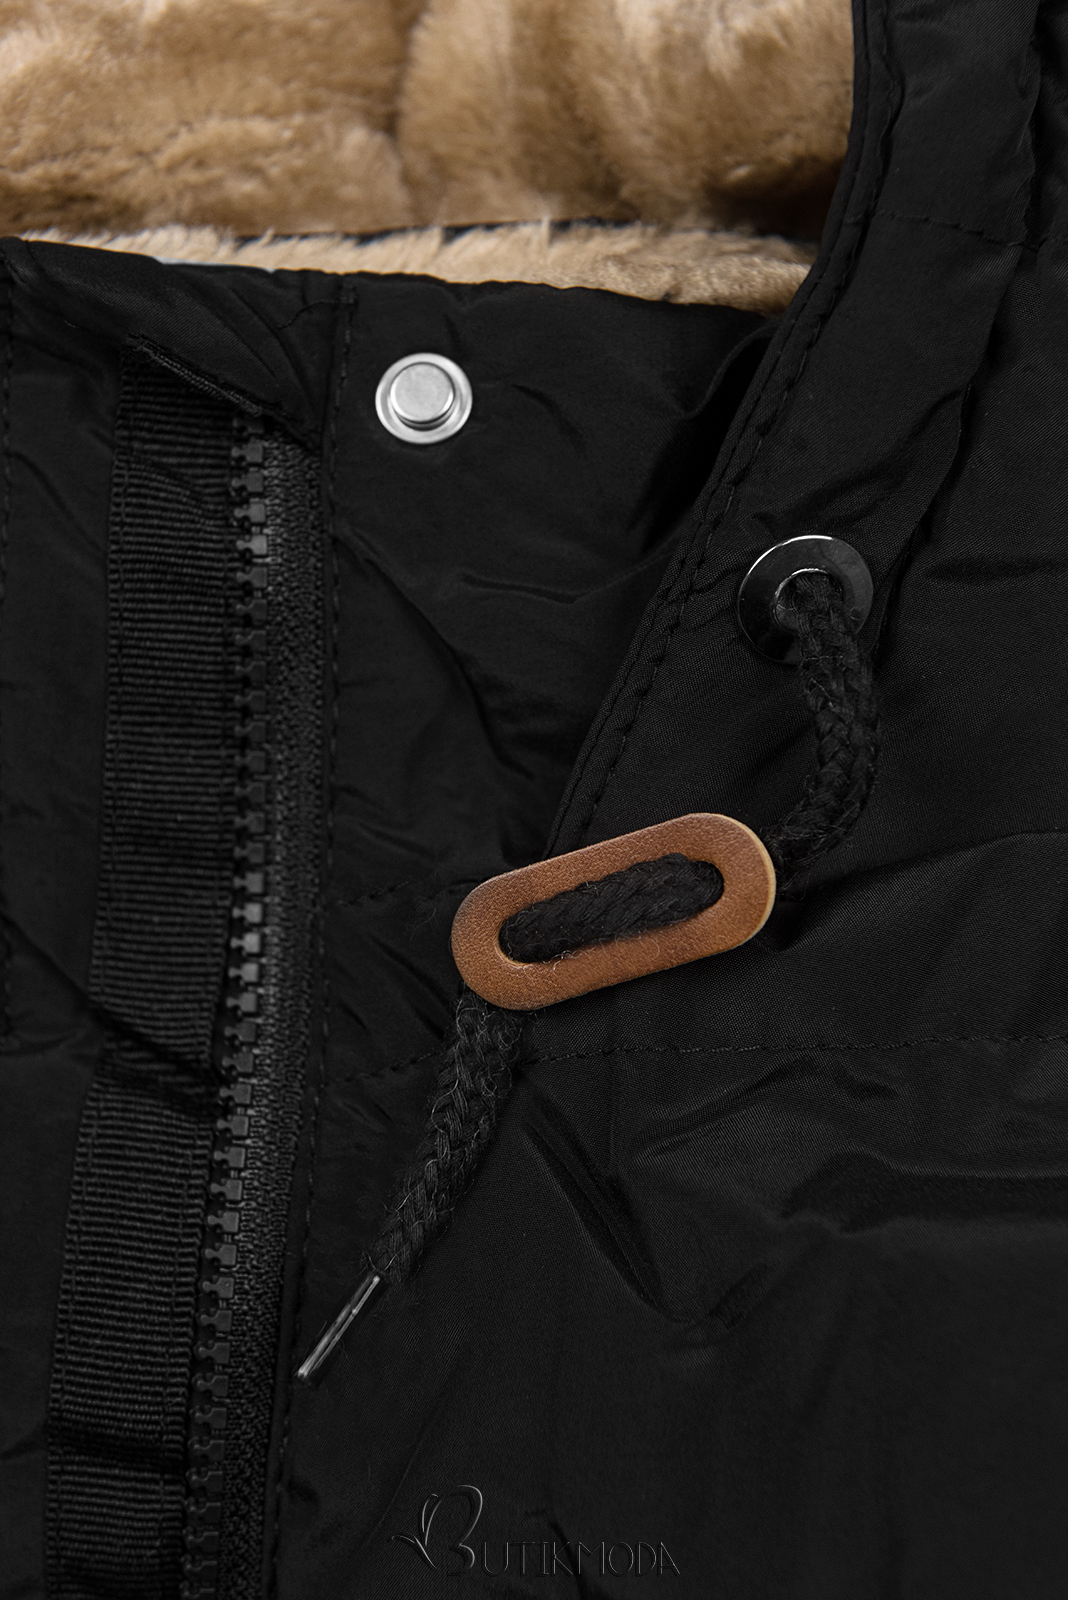 Fekete színű téli kabát plüss béléssel